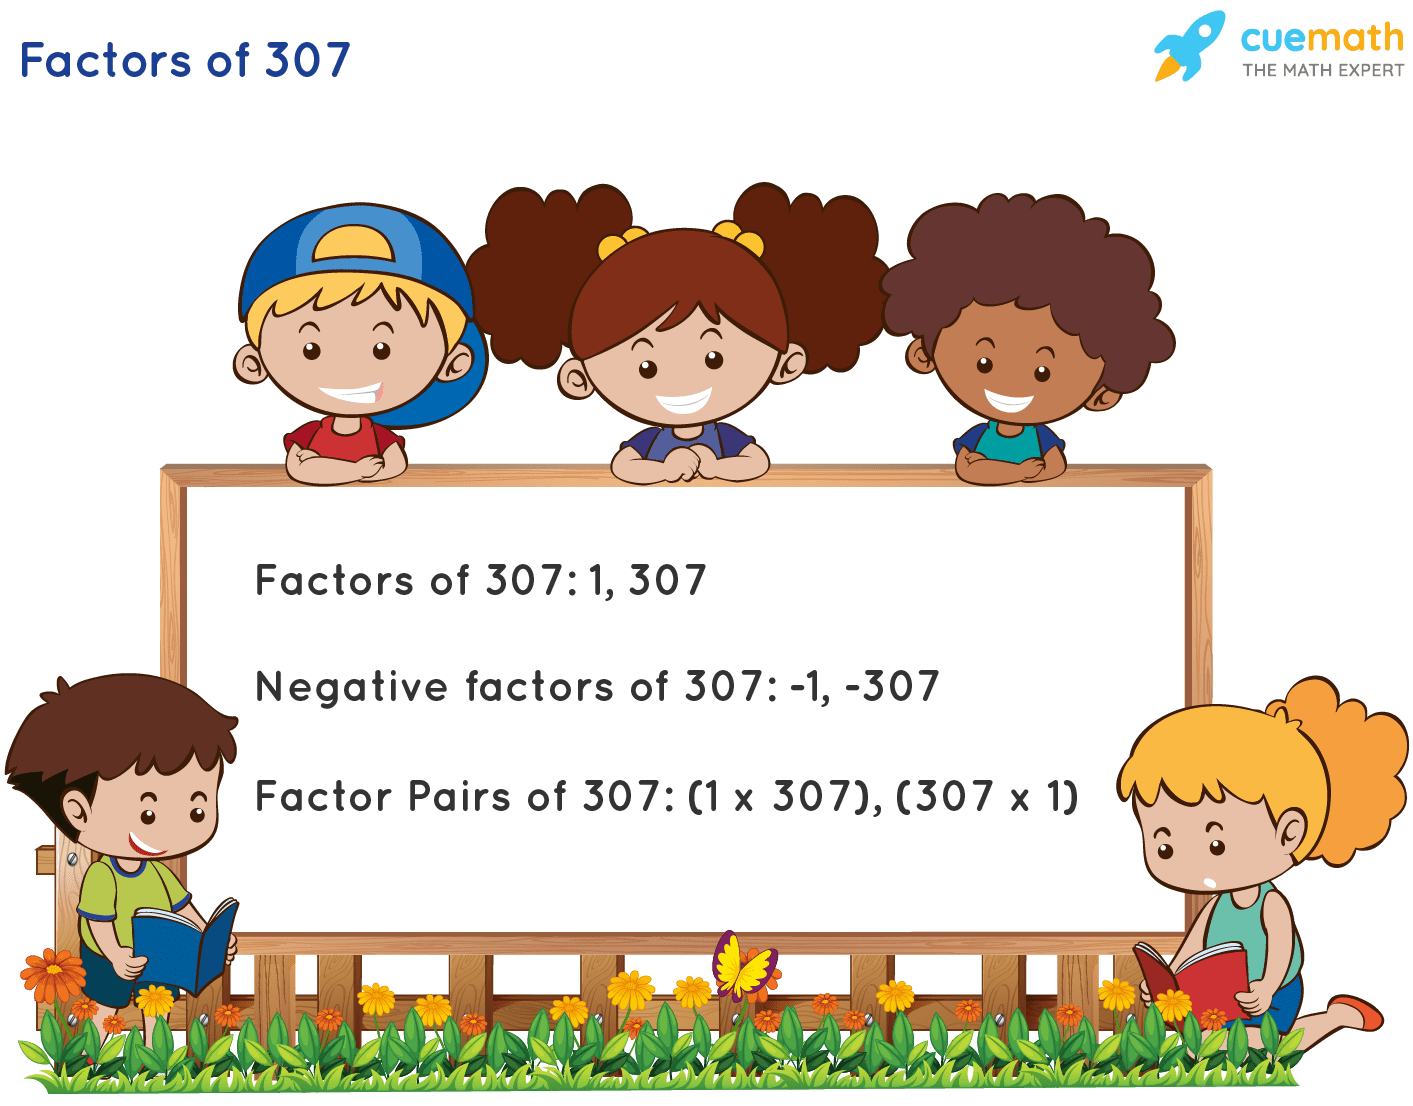 Factors of 307